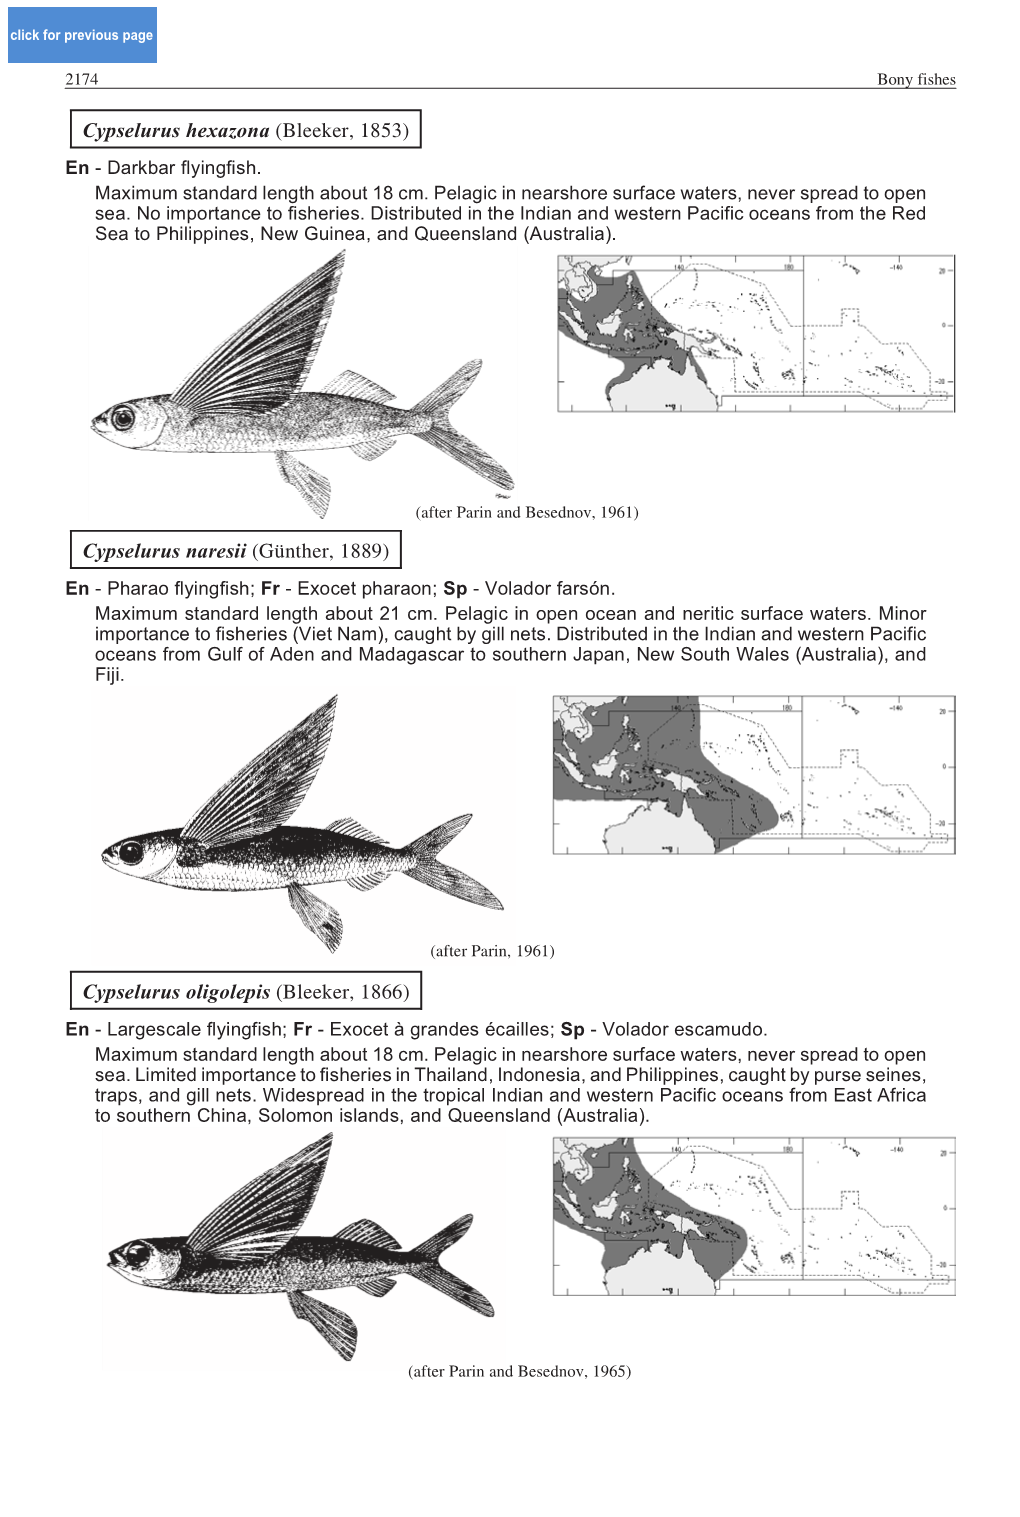 Cypselurus Oligolepis (Bleeker, 1866) En - Largescale Flyingfish; Fr - Exocet À Grandes Écailles; Sp - Volador Escamudo